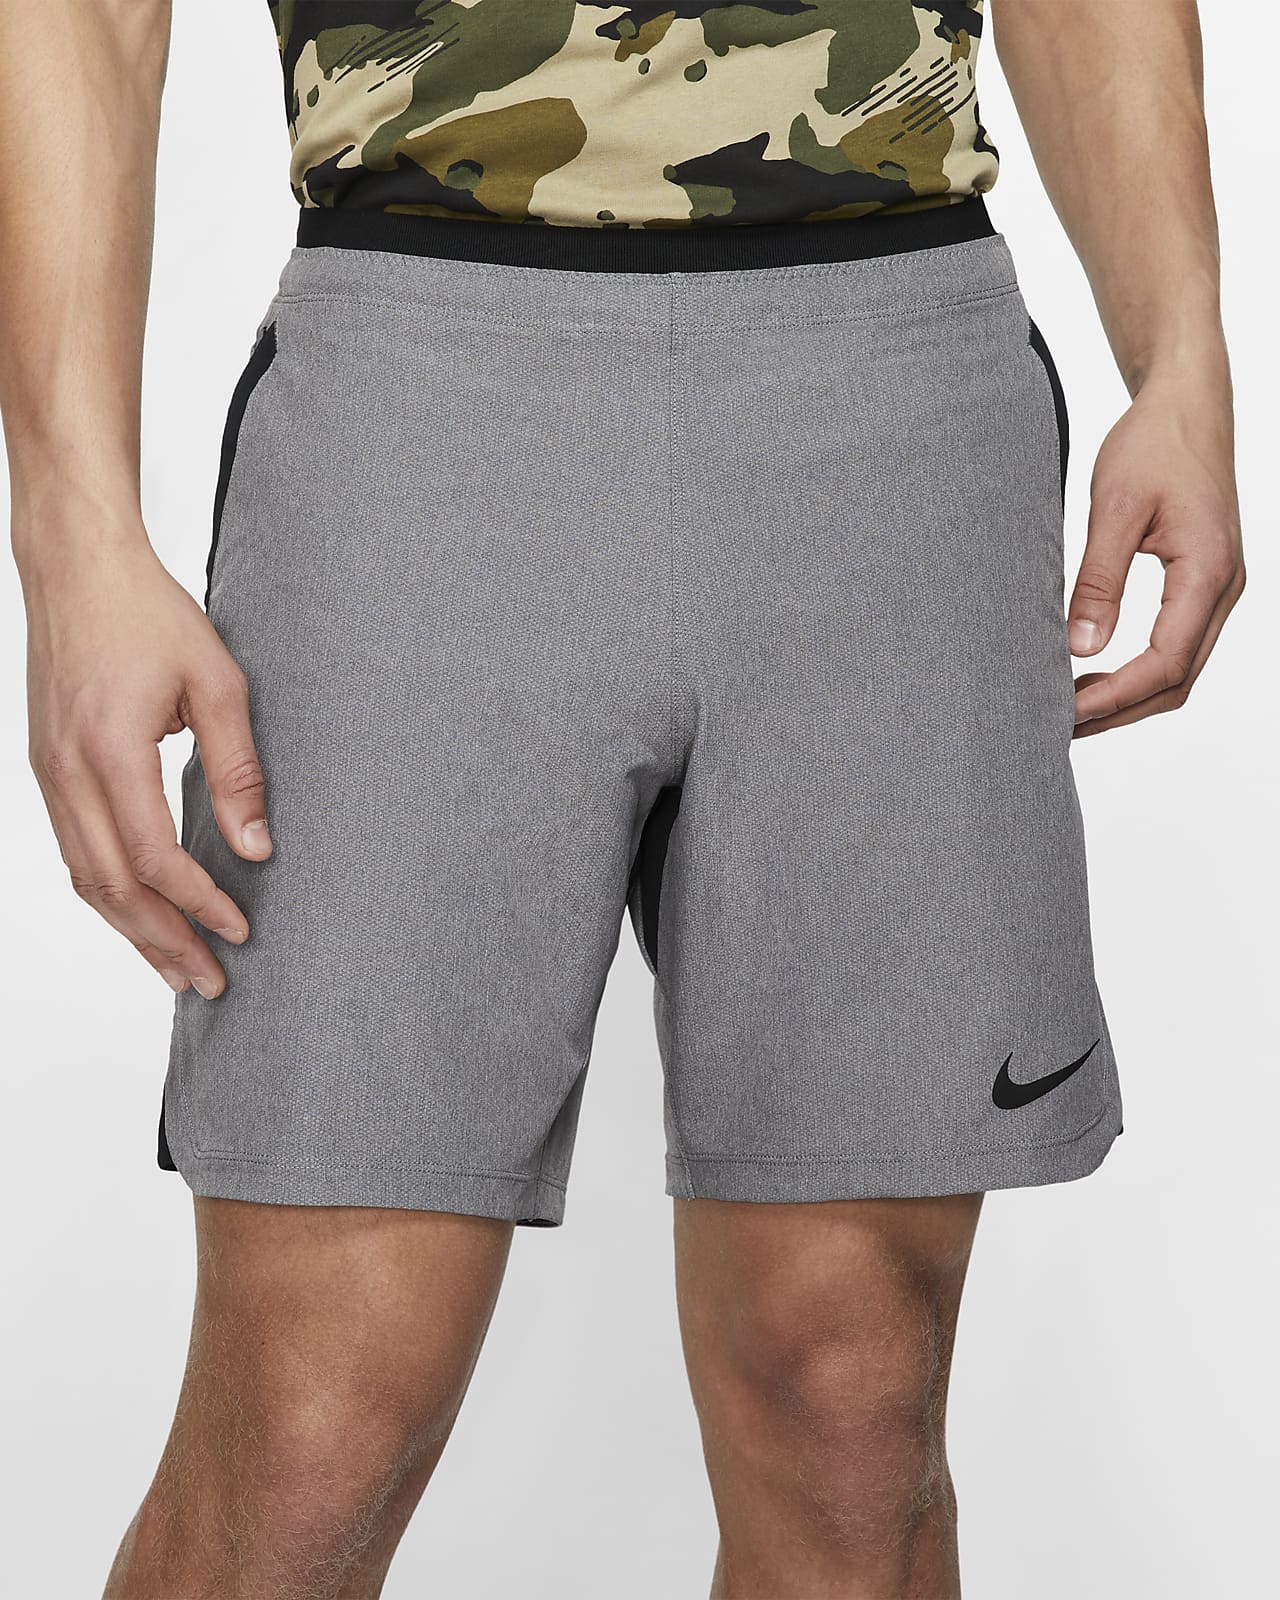 Shorts para hombre Nike Pro Flex Rep. Nike.com